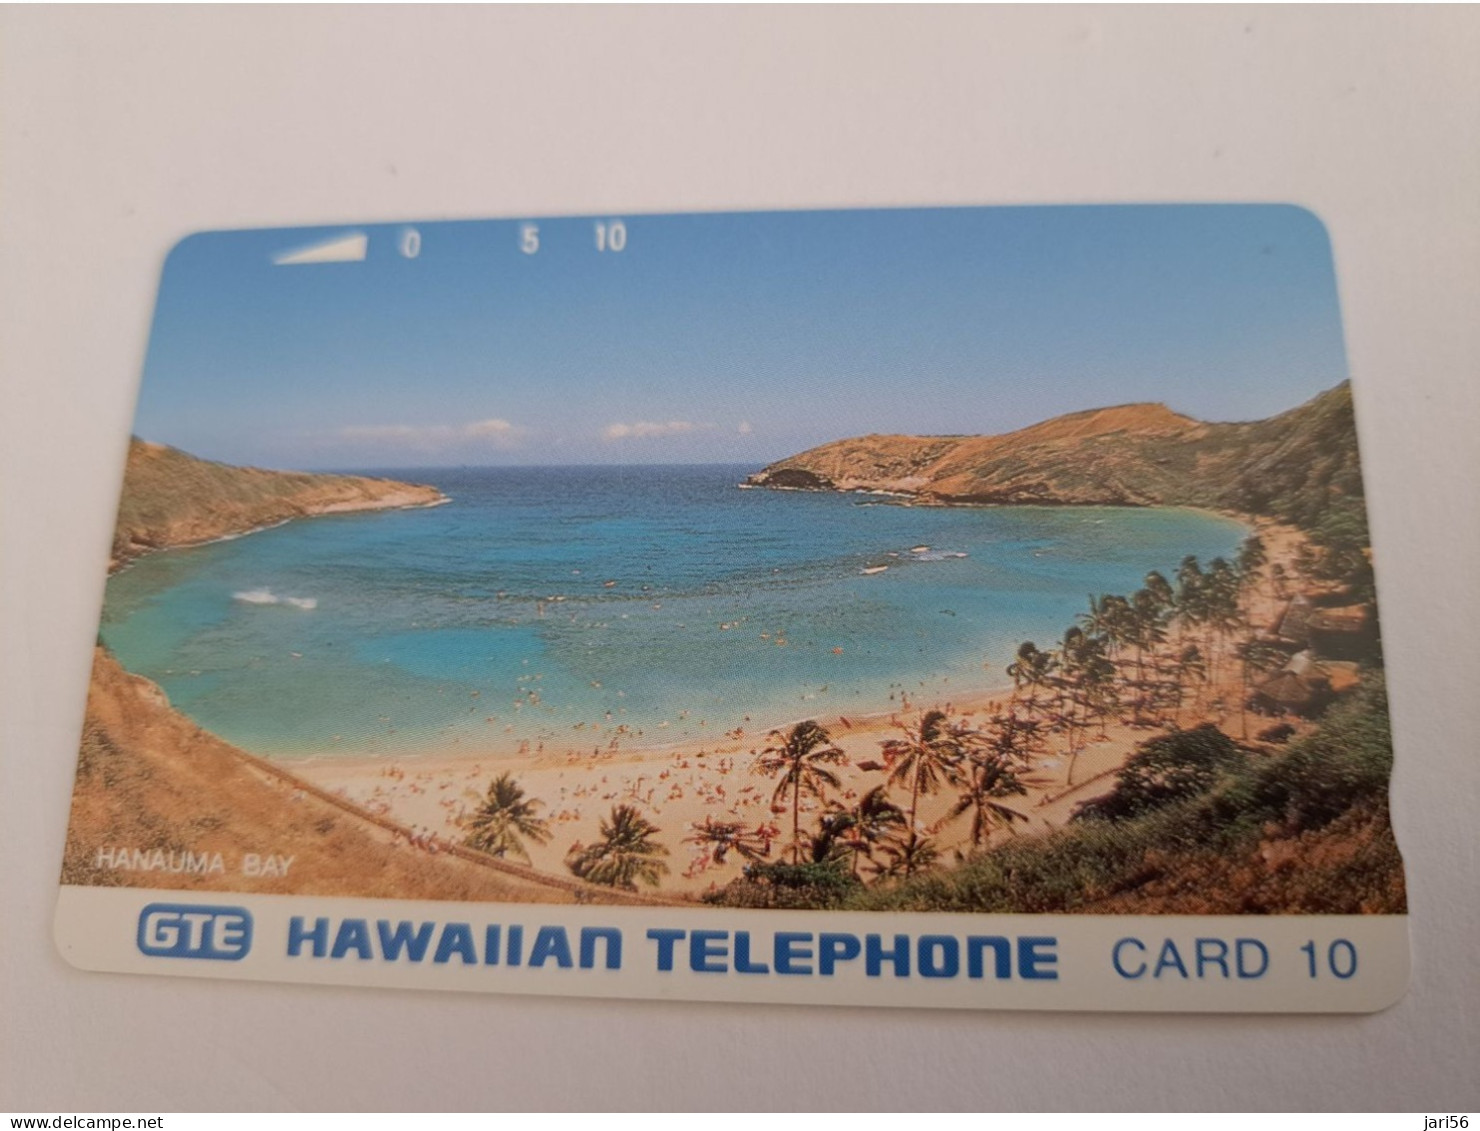 HAWAIIAN TELEPHONECARD 10 UNITS /MAGNETIC /HANANUMA BAY - HAWAII    /   HAWAII , GTE   MINT !!      **13103 ** - Hawaii